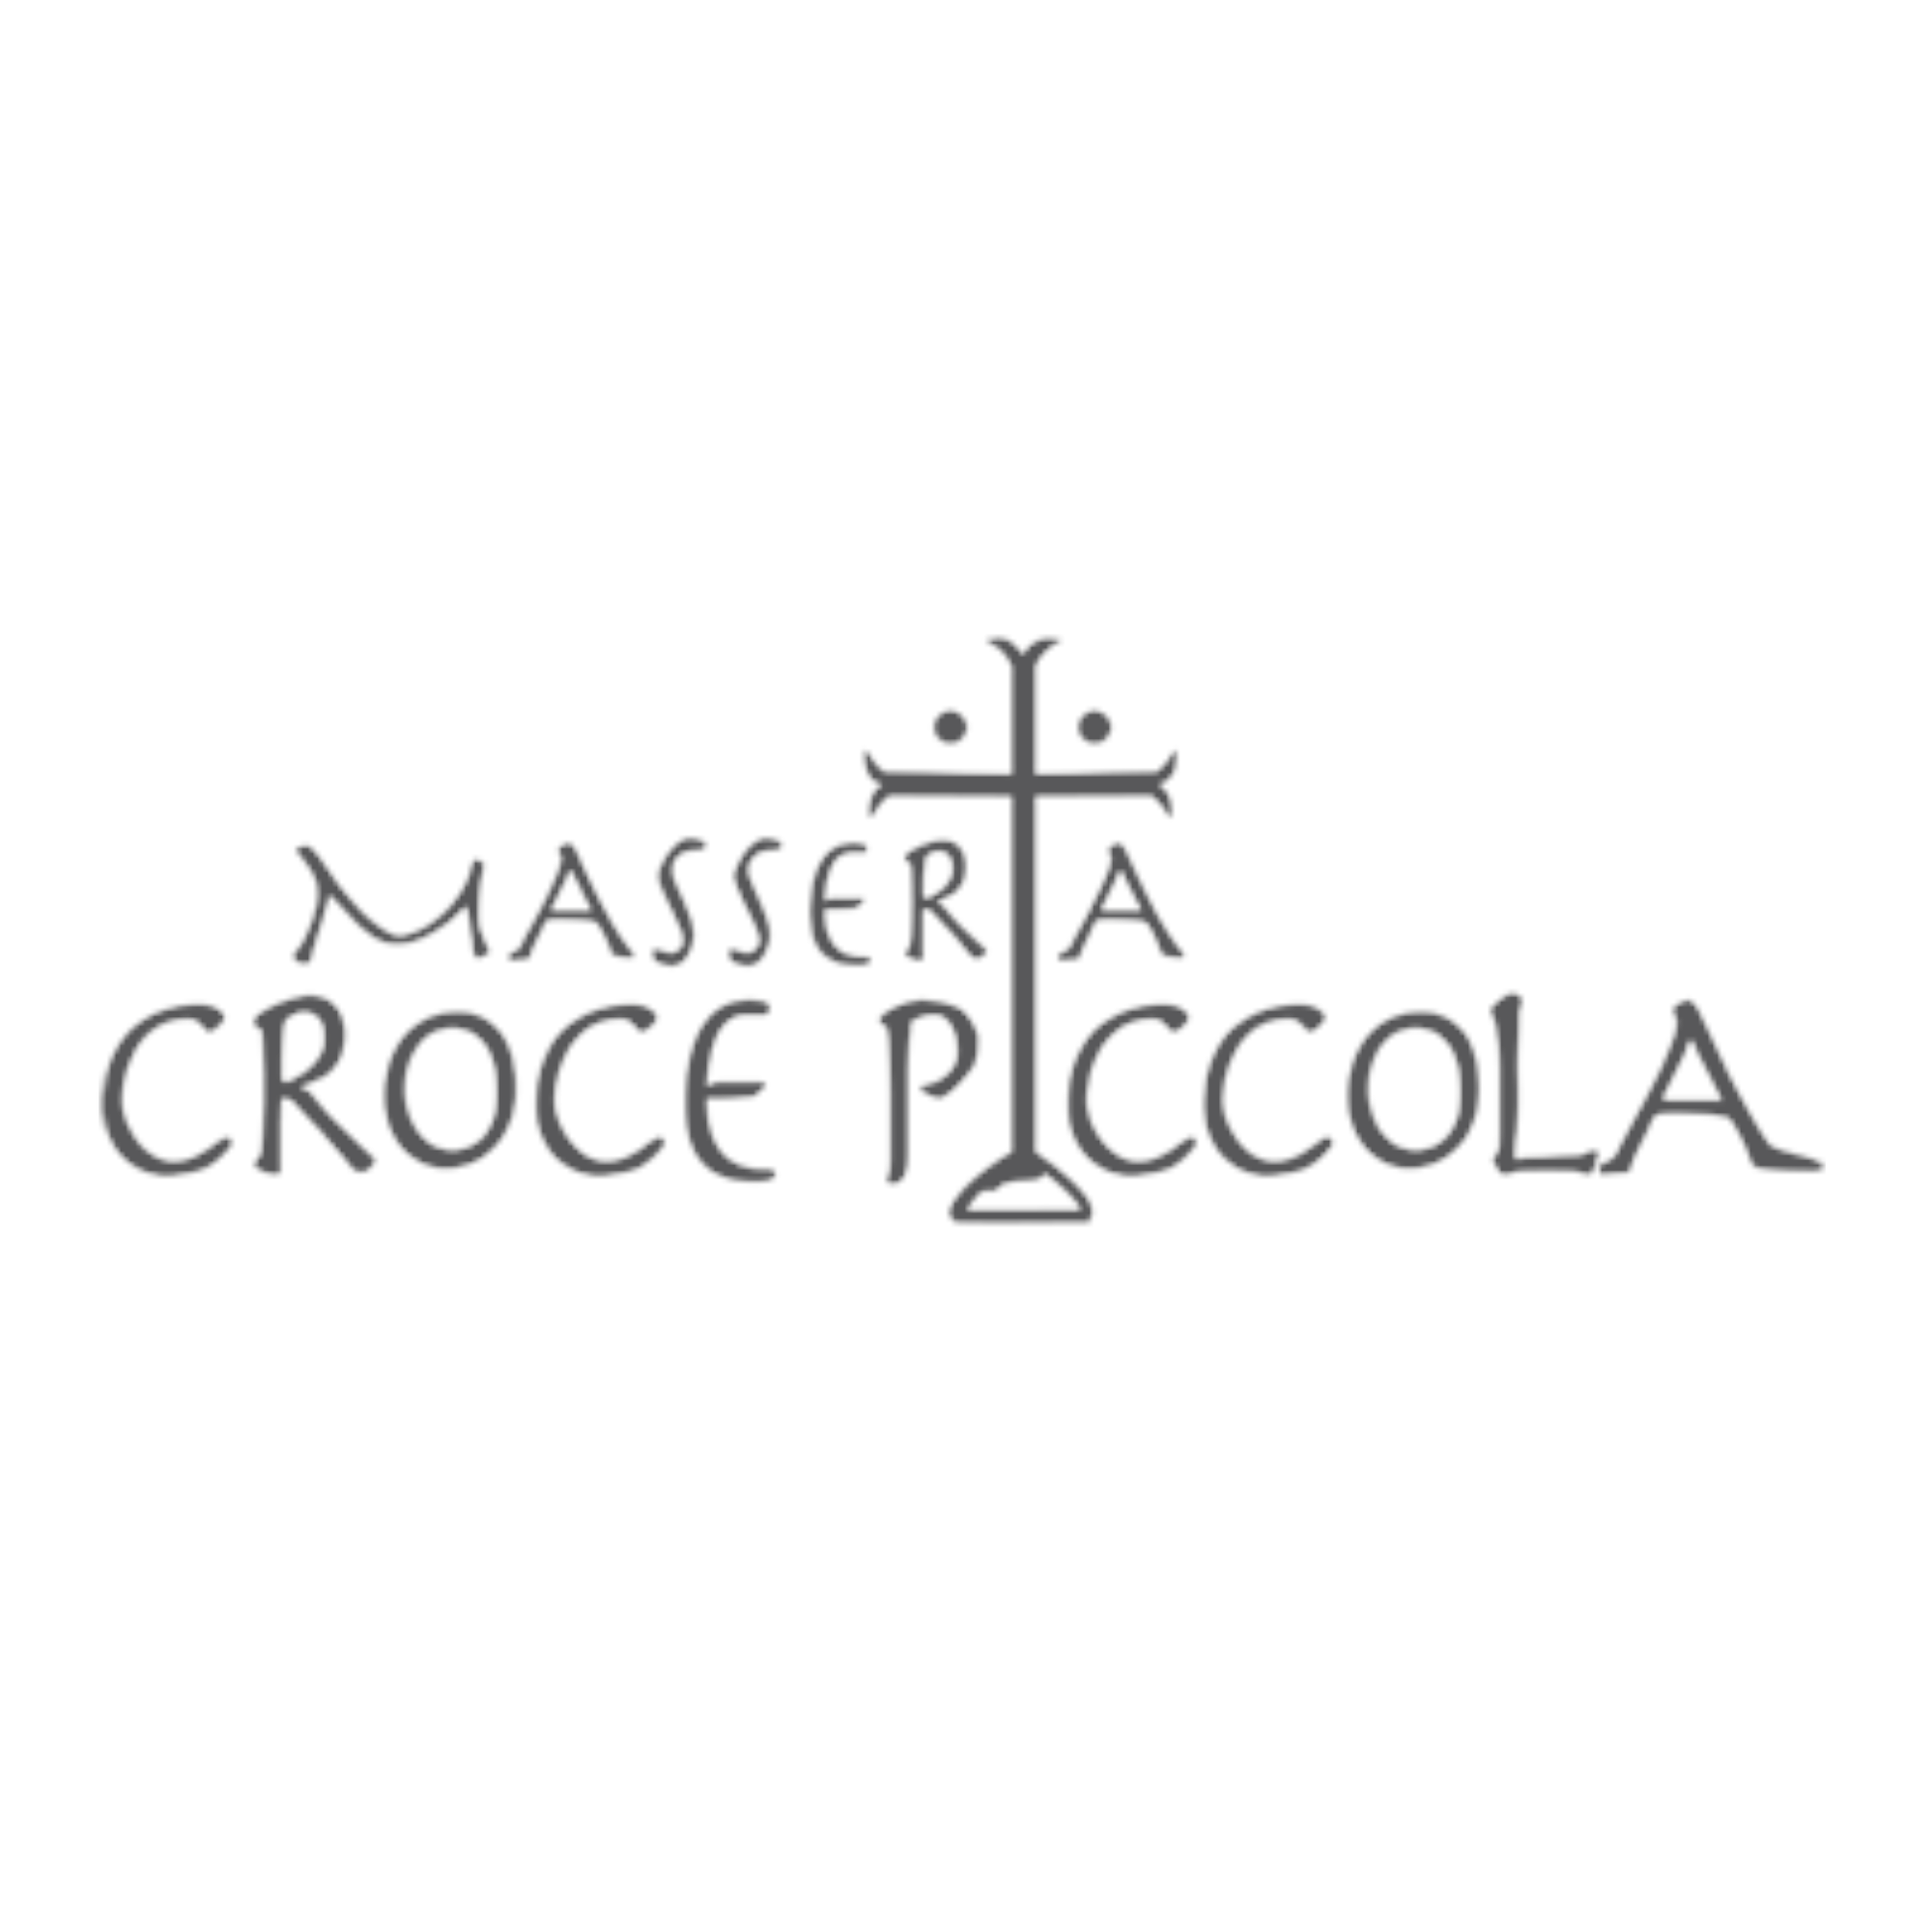 MASSERIA CROCE PICCOLA